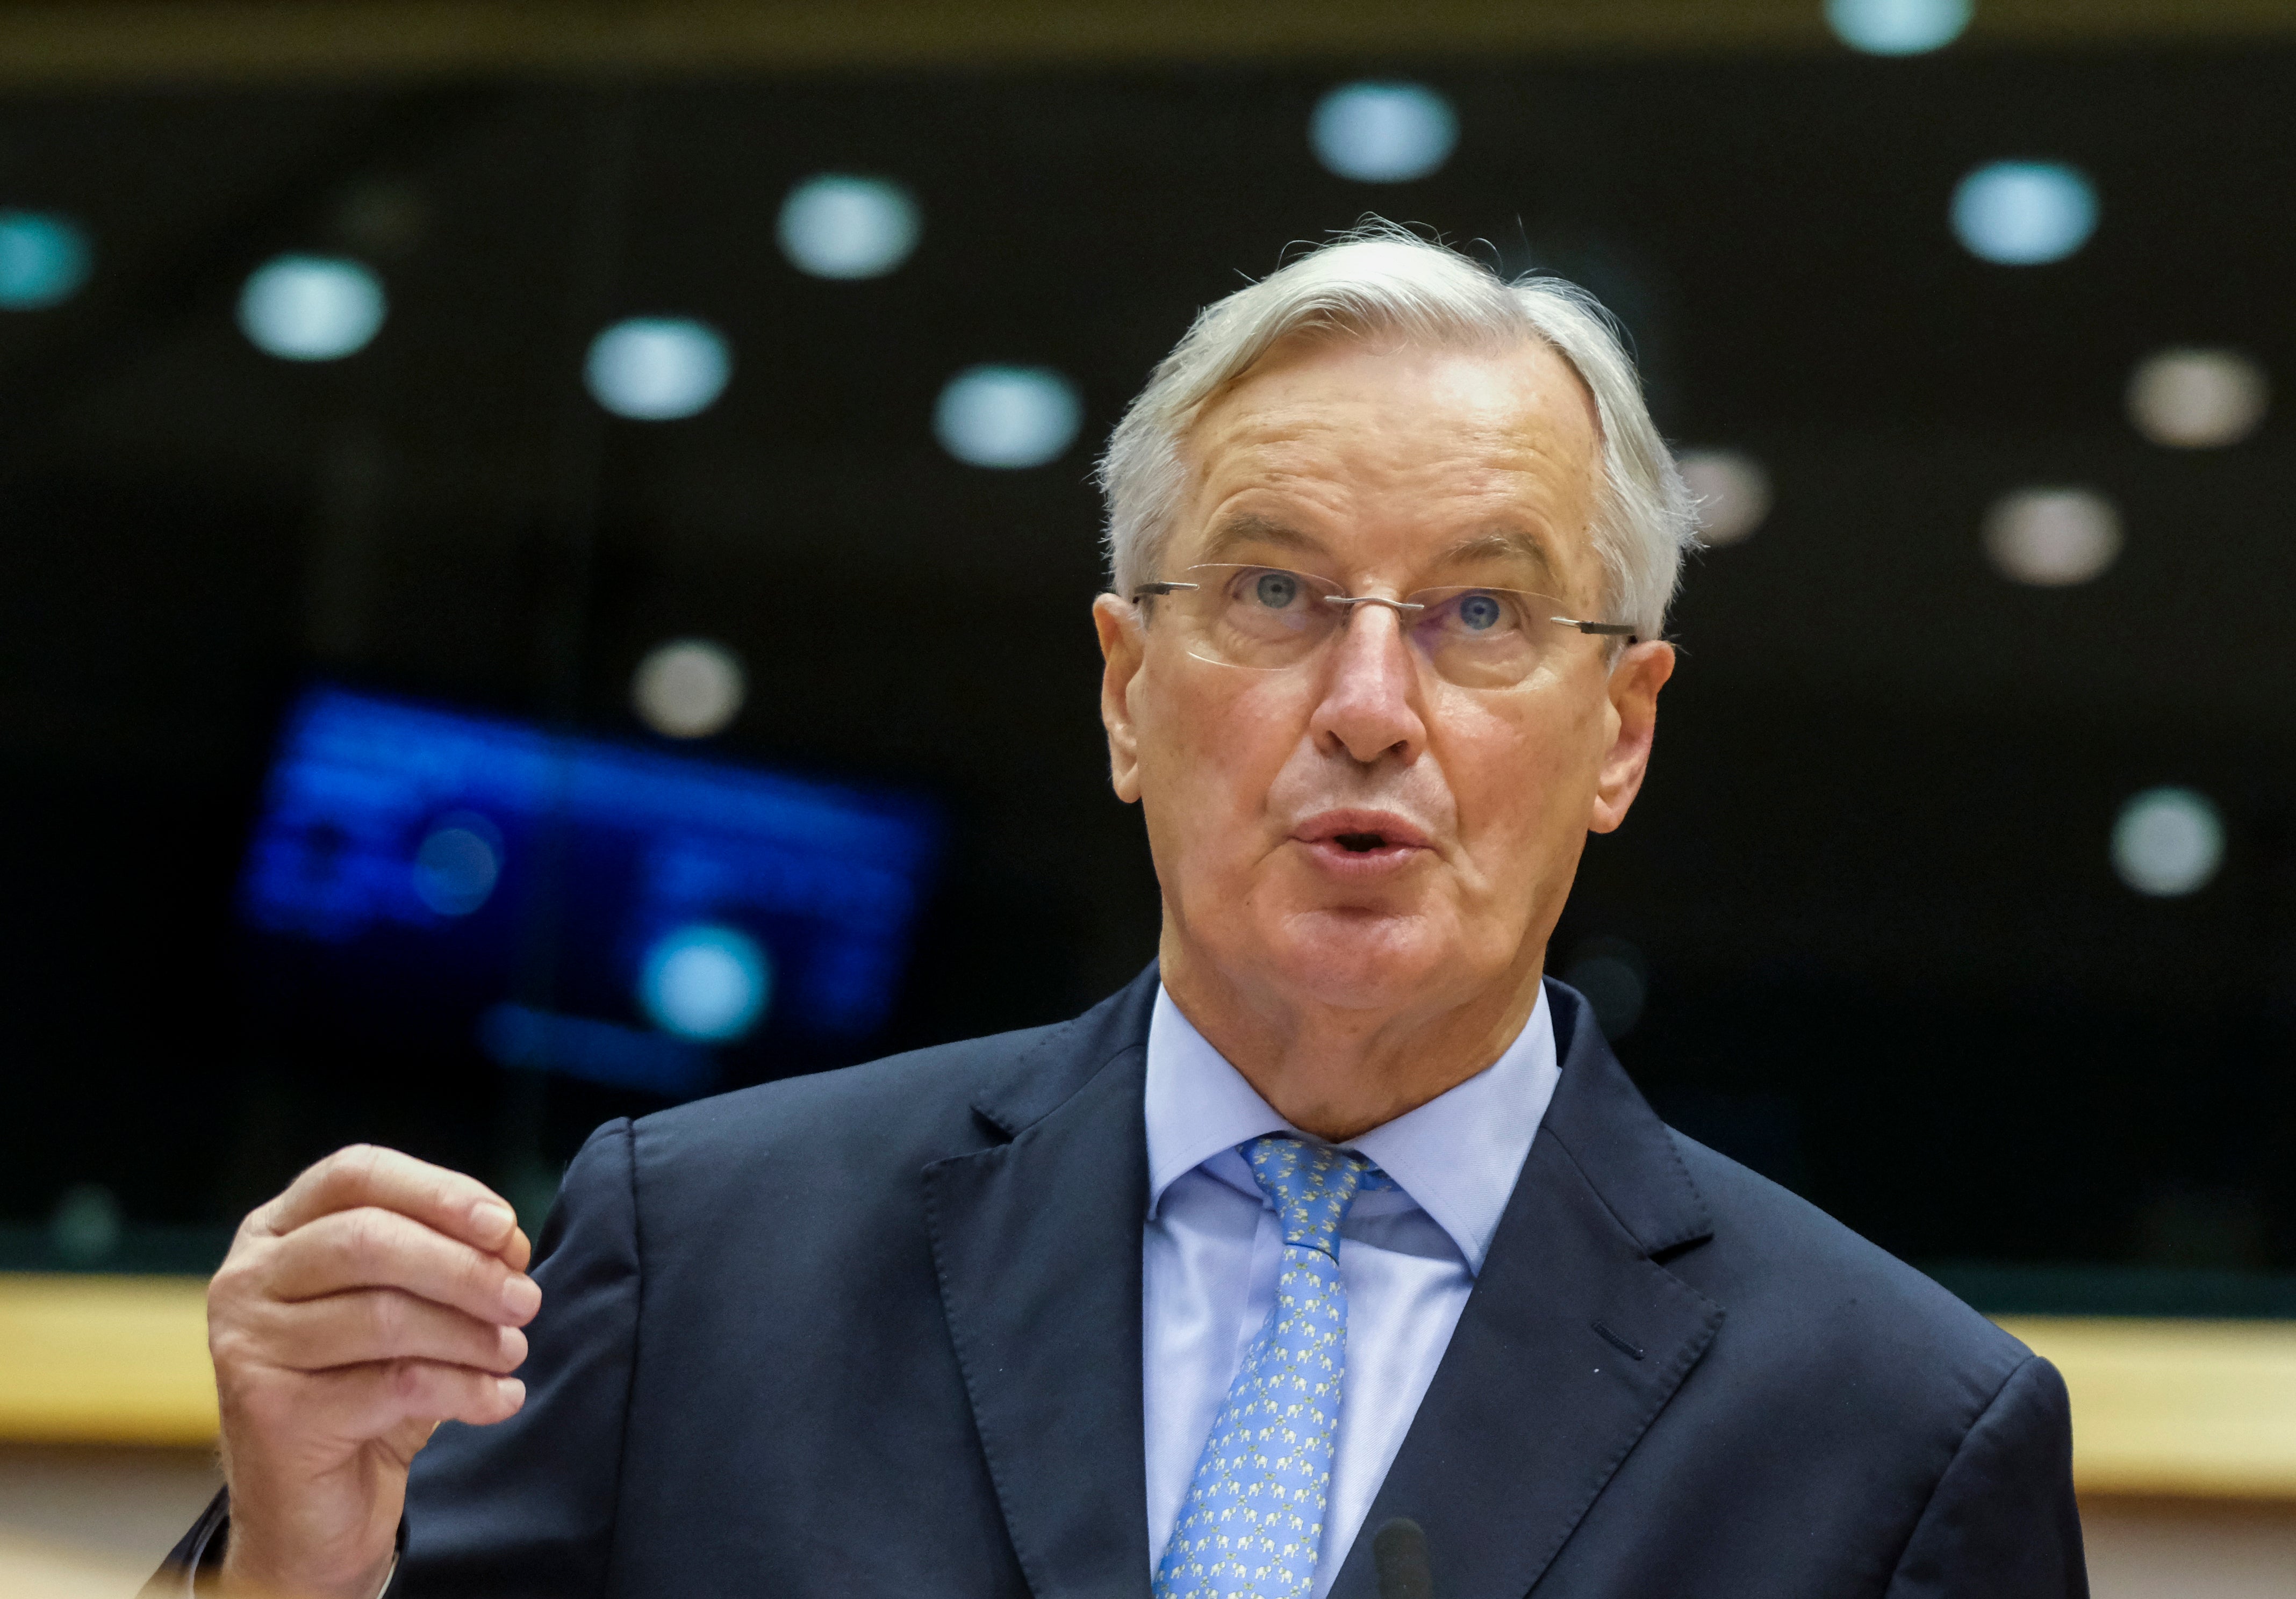 Michel Barnier speaking in European parliament on Wednesday